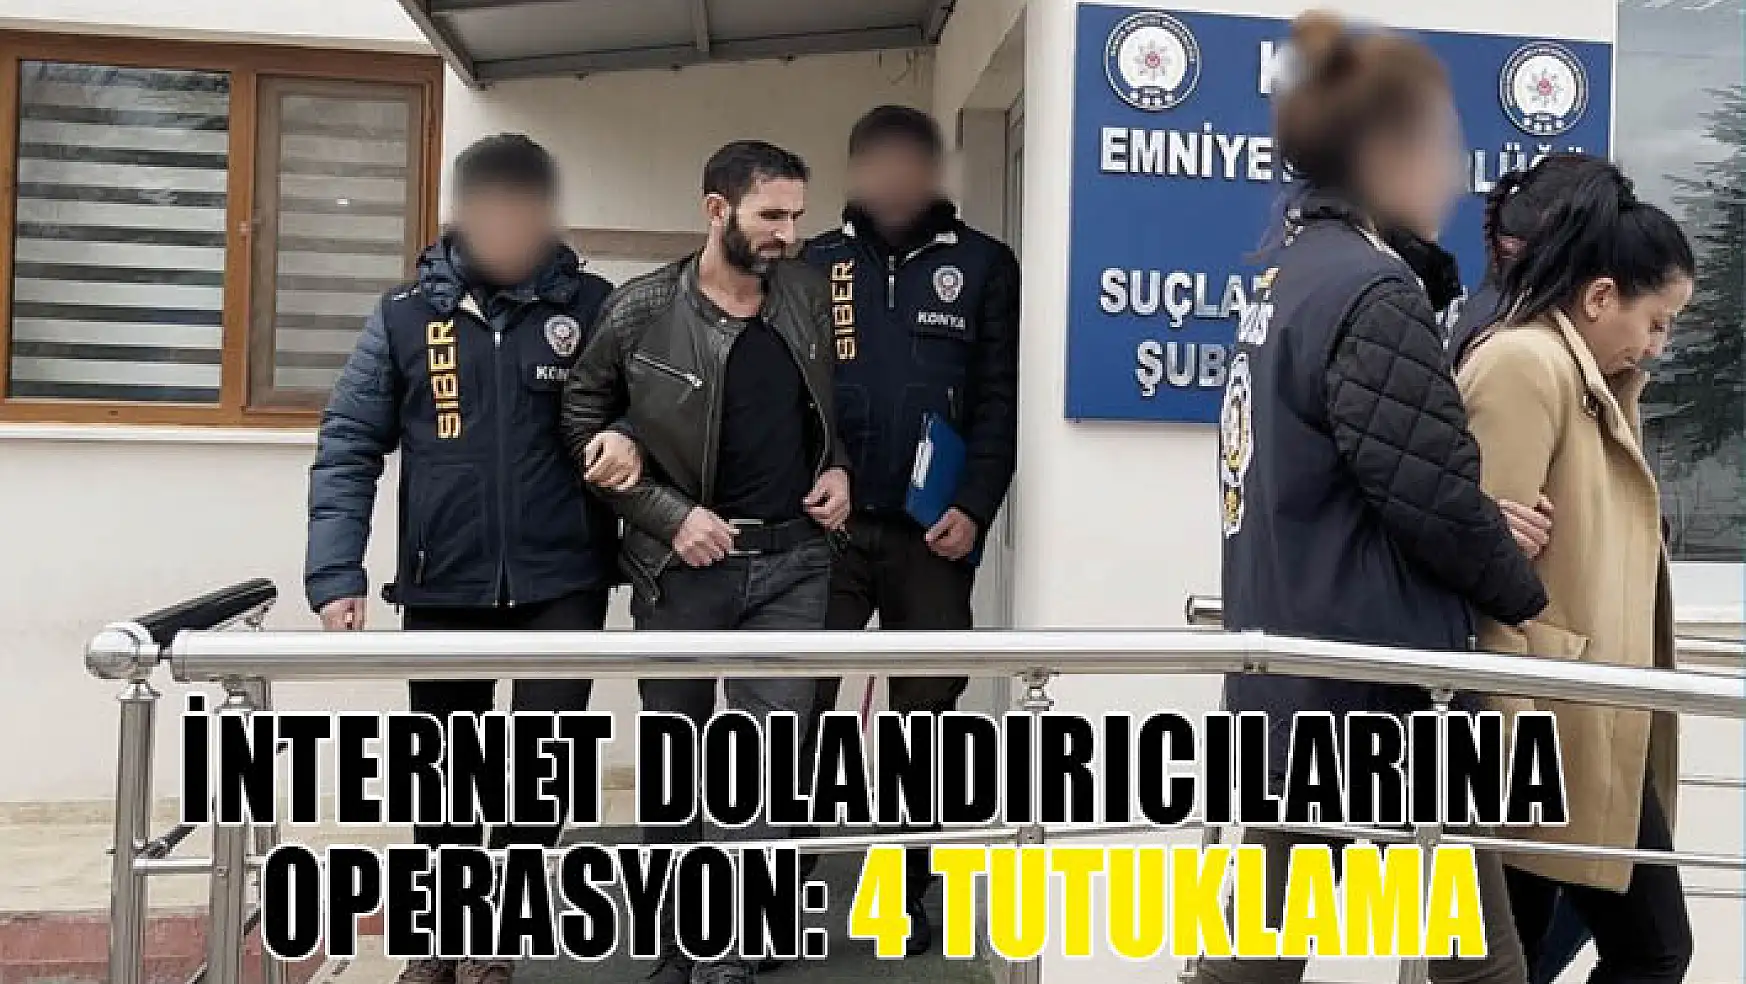 Konya'da internet dolandırıcılarına operasyon: 4 tutuklama